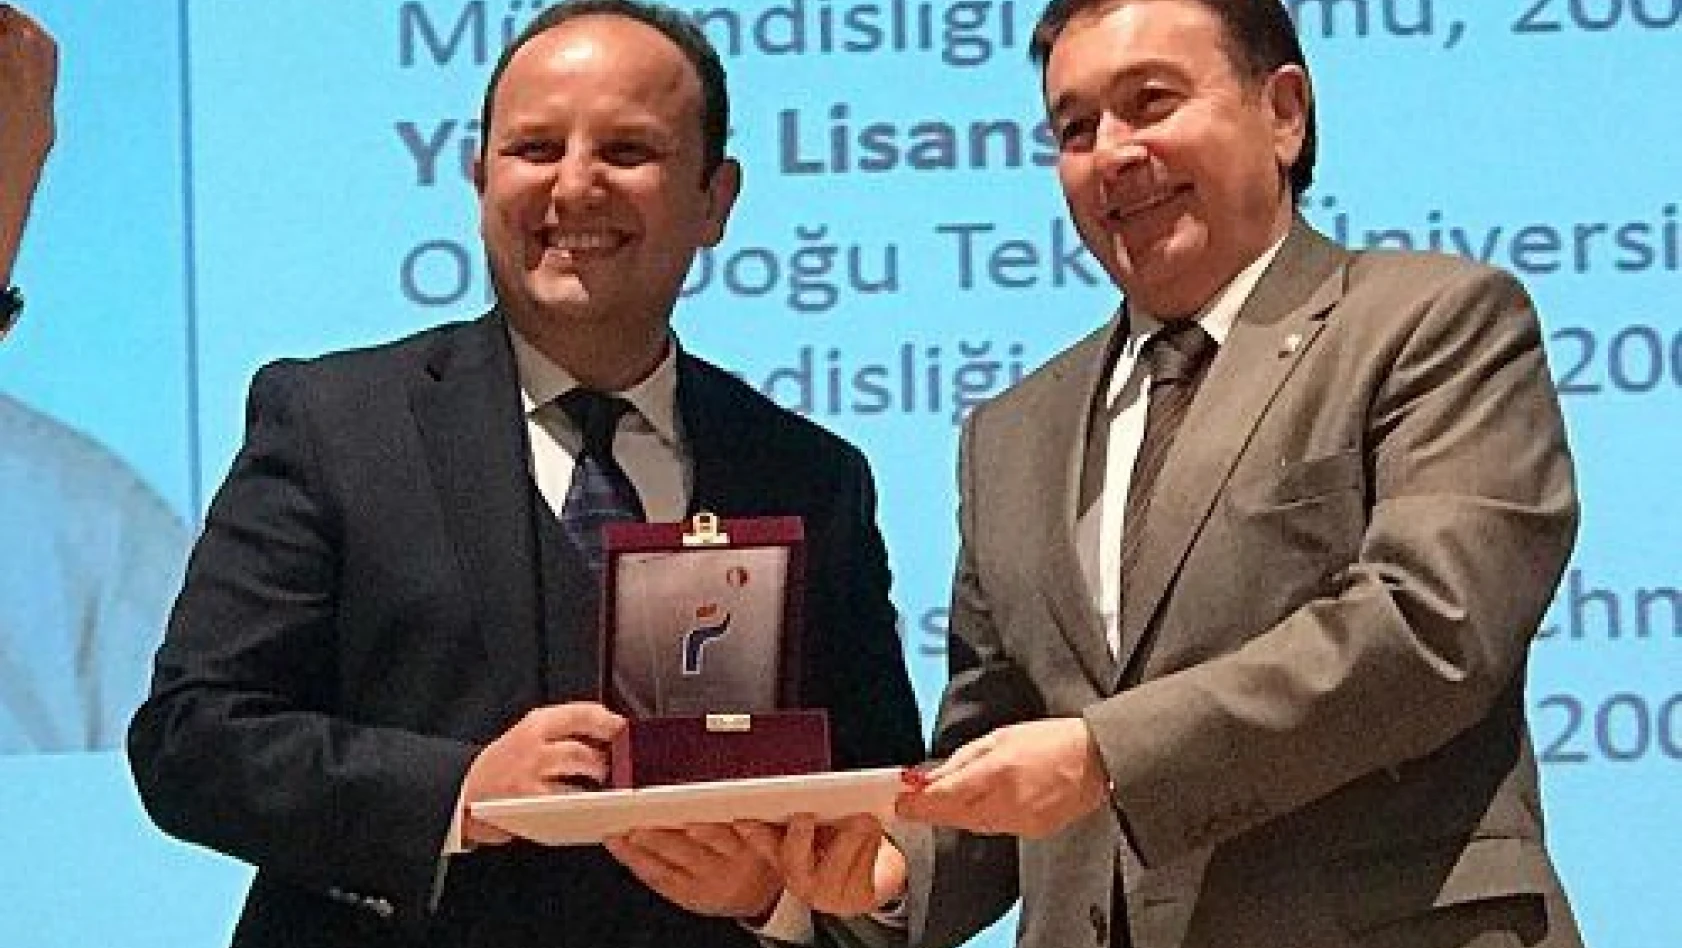 AGÜ Öğretim Üyesi Prof. Dr. Güngör'e araştırma teşvik ödülü